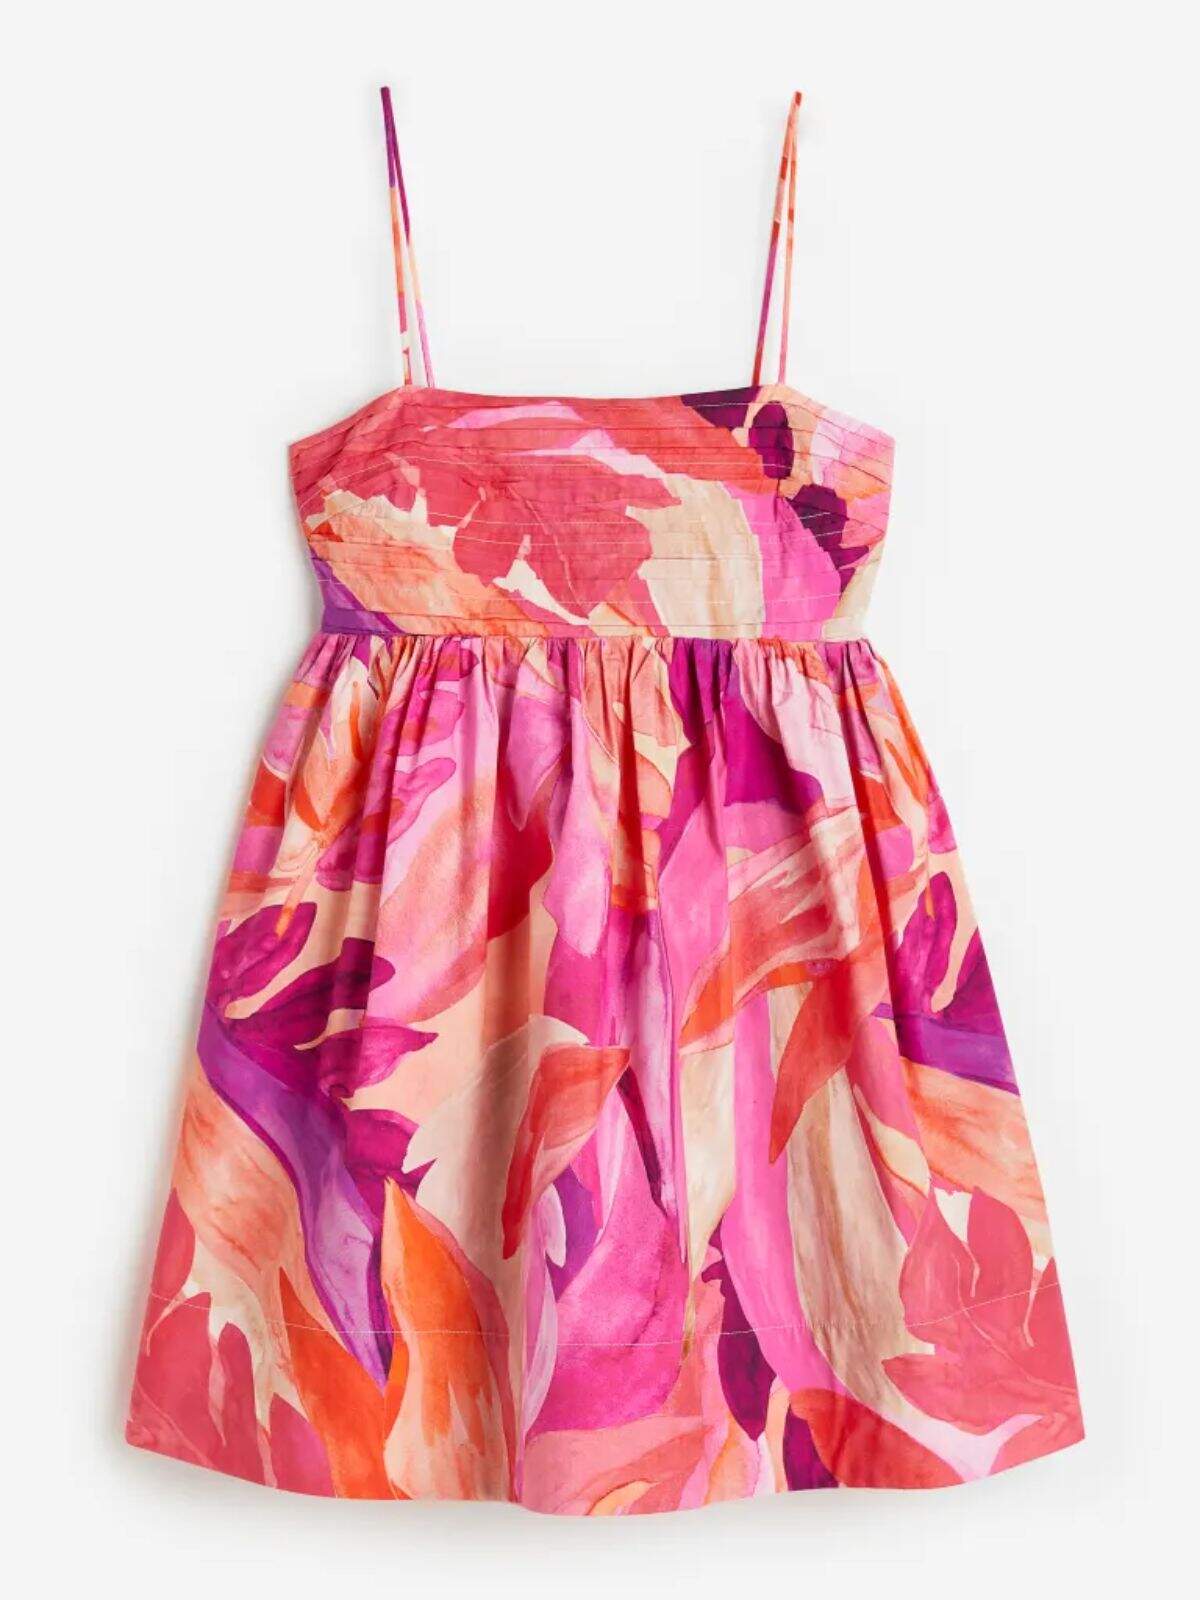 El nuevo vestido estampado de H&M que querrás para por solo 19,99